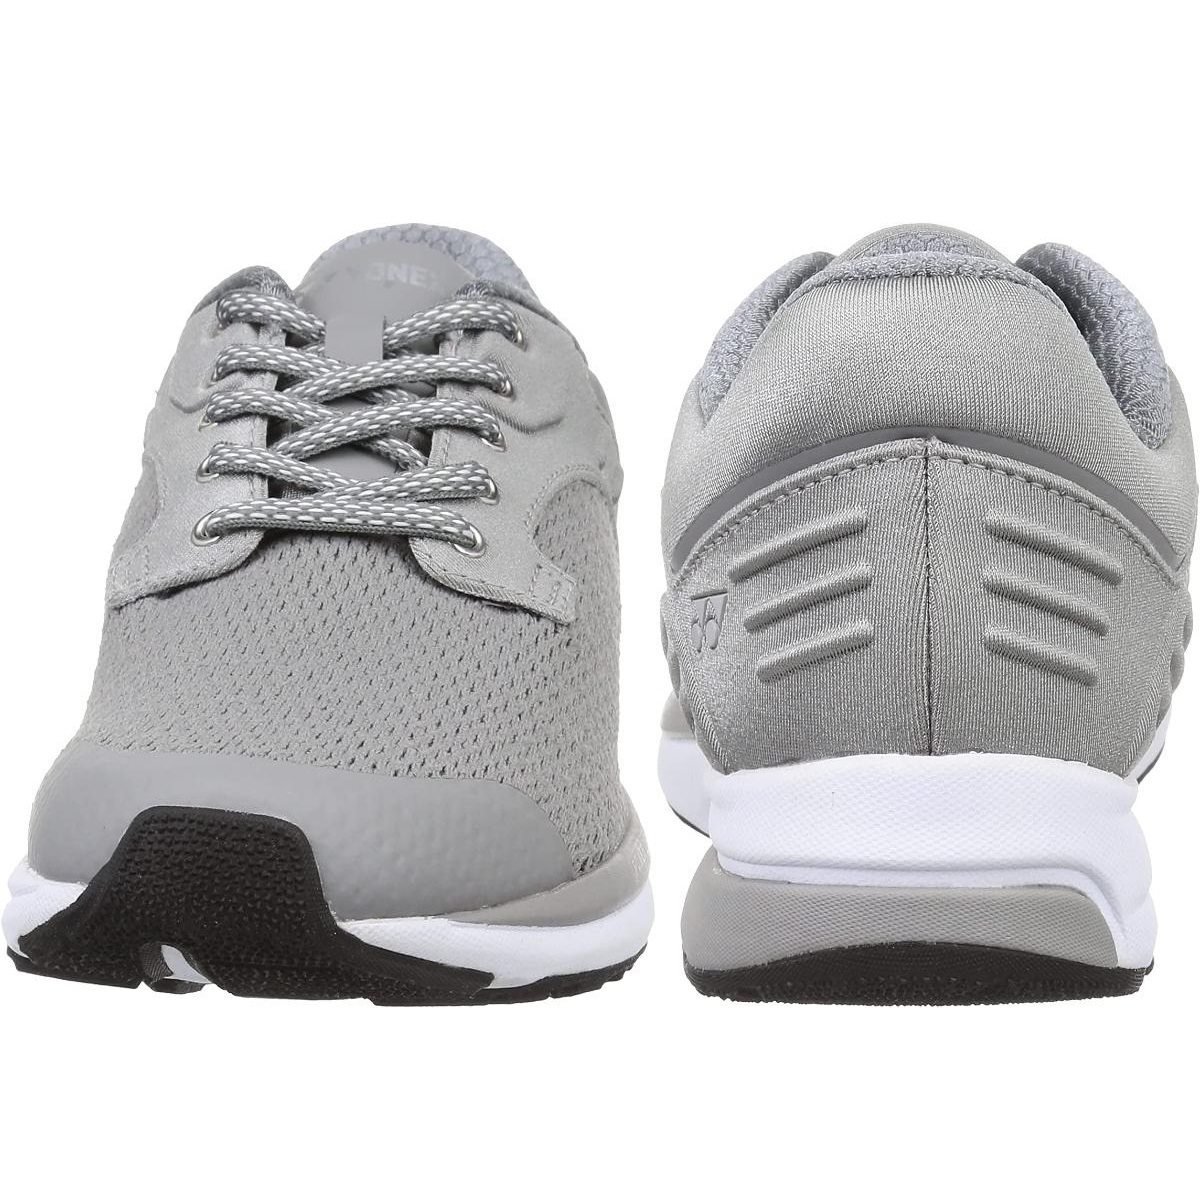 SHW116 GY 26.0cm Yonex walking jo silver g running power cushion shoes shoes 3.5E YONEX mesh light weight 